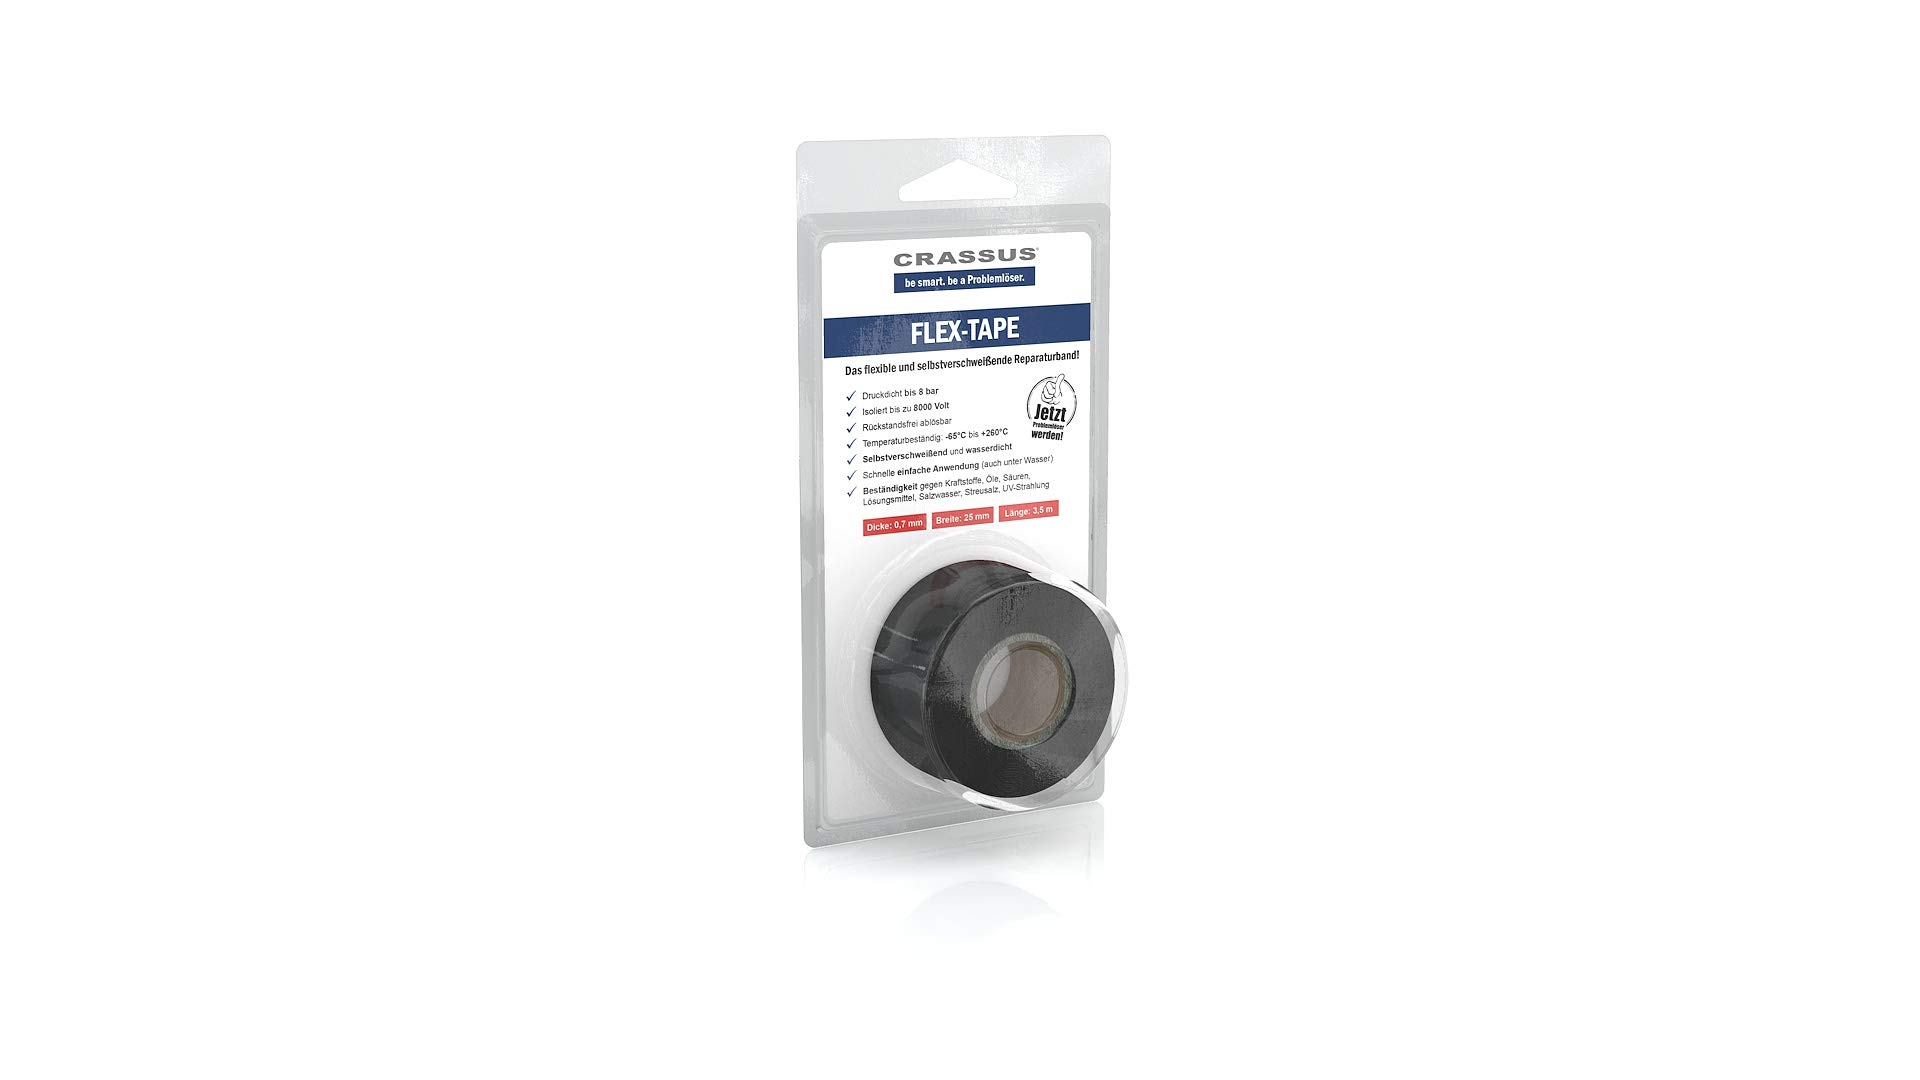 Crassus Flex-Tape, Flexibles und Selbstverschweißendes Reparaturband, 1 Stück, Schwarz, CRA70605